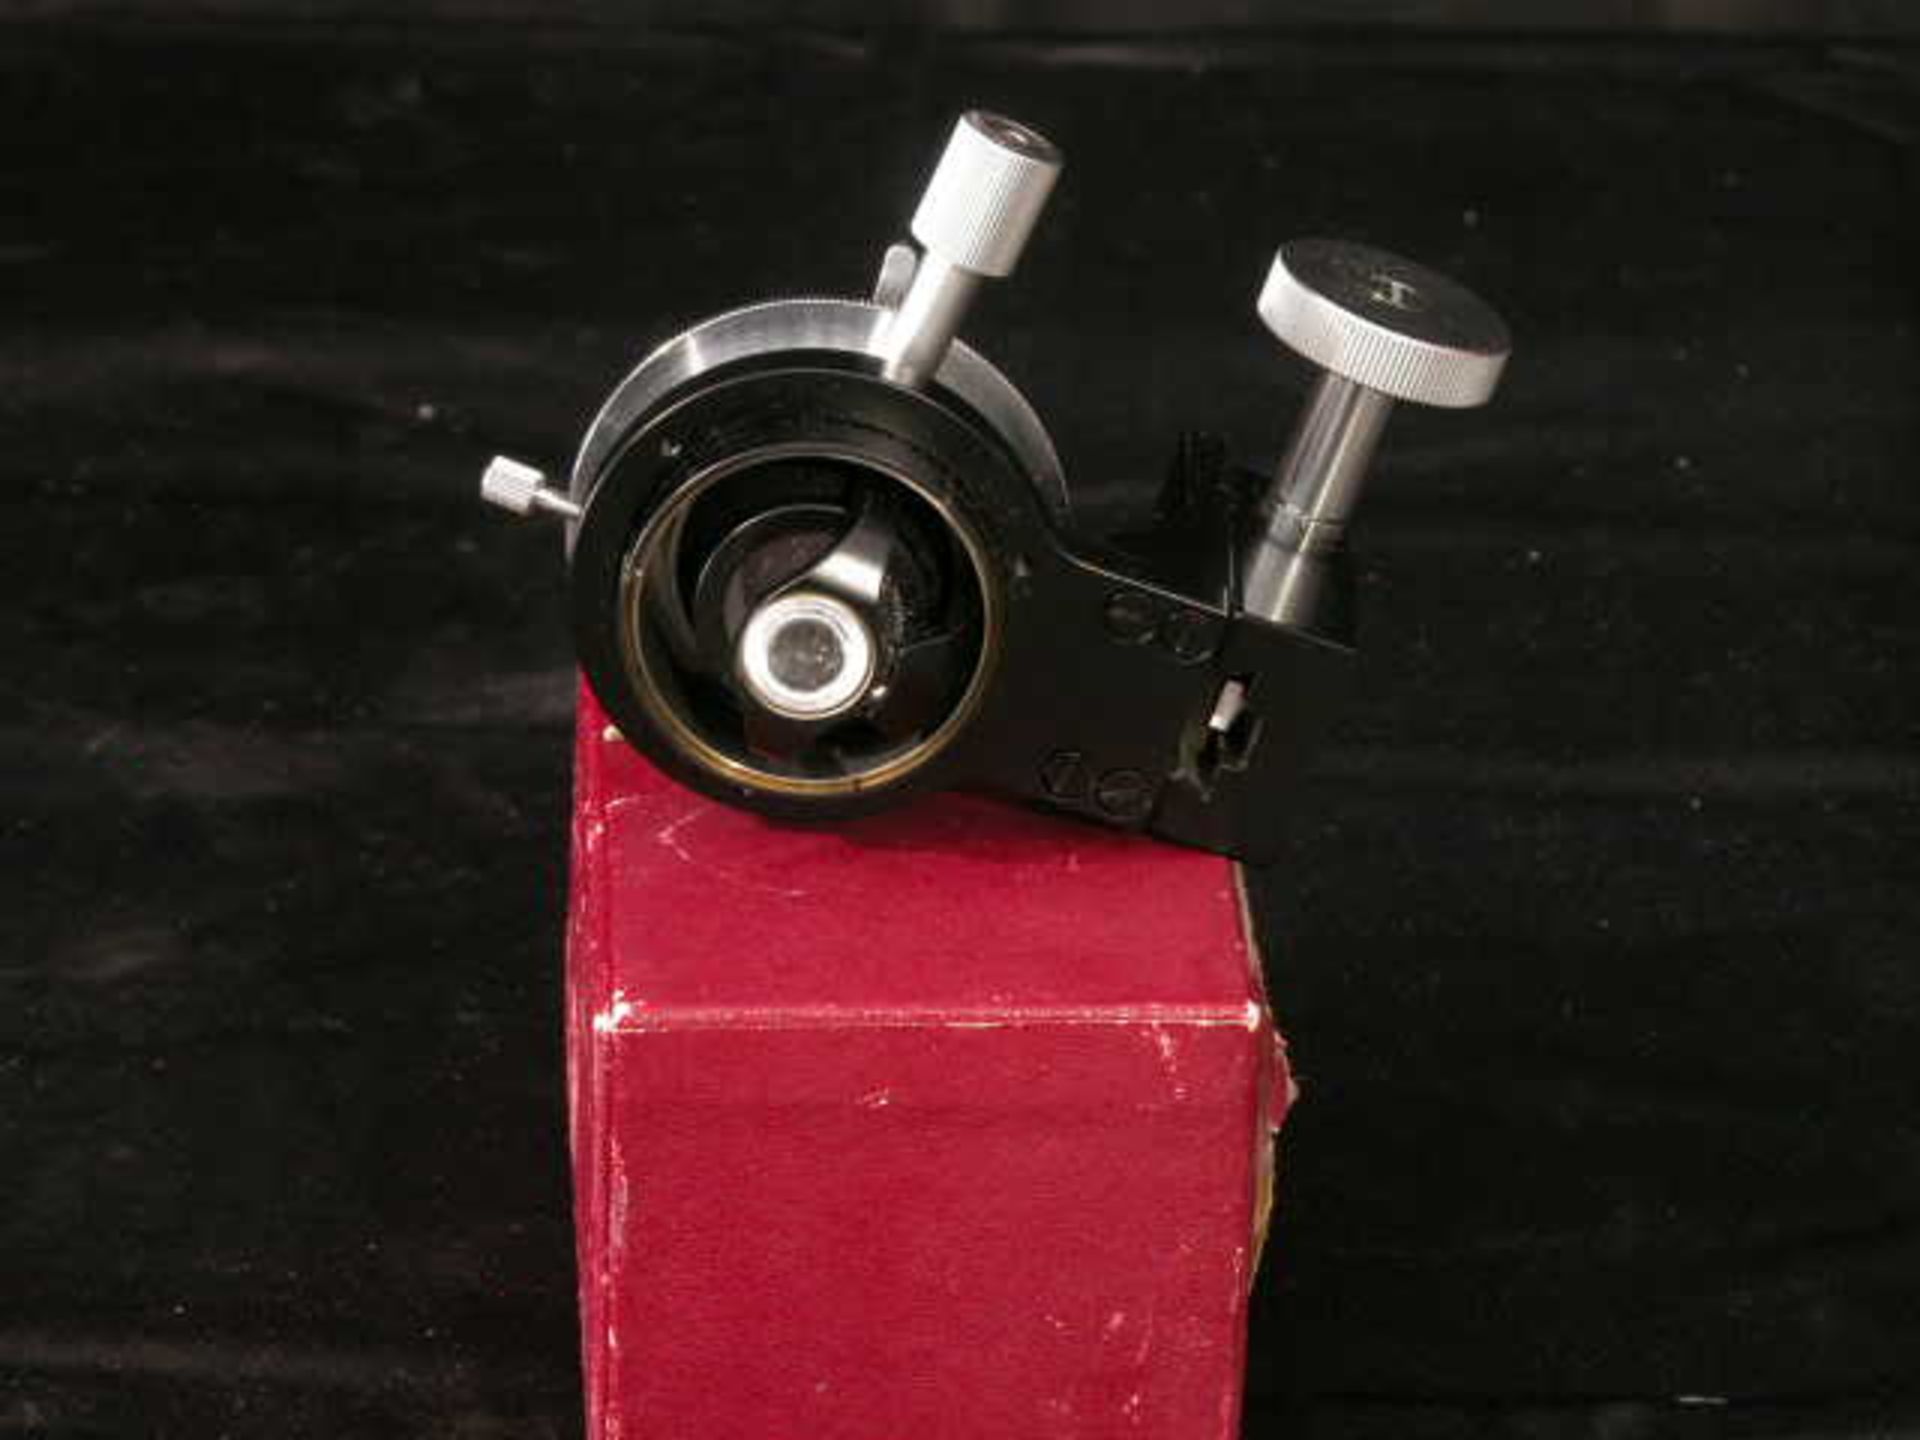 Ernst Leitz Wetzlar Low Power Microscope Condenser, Qty 1, 323410830997 - Image 4 of 8